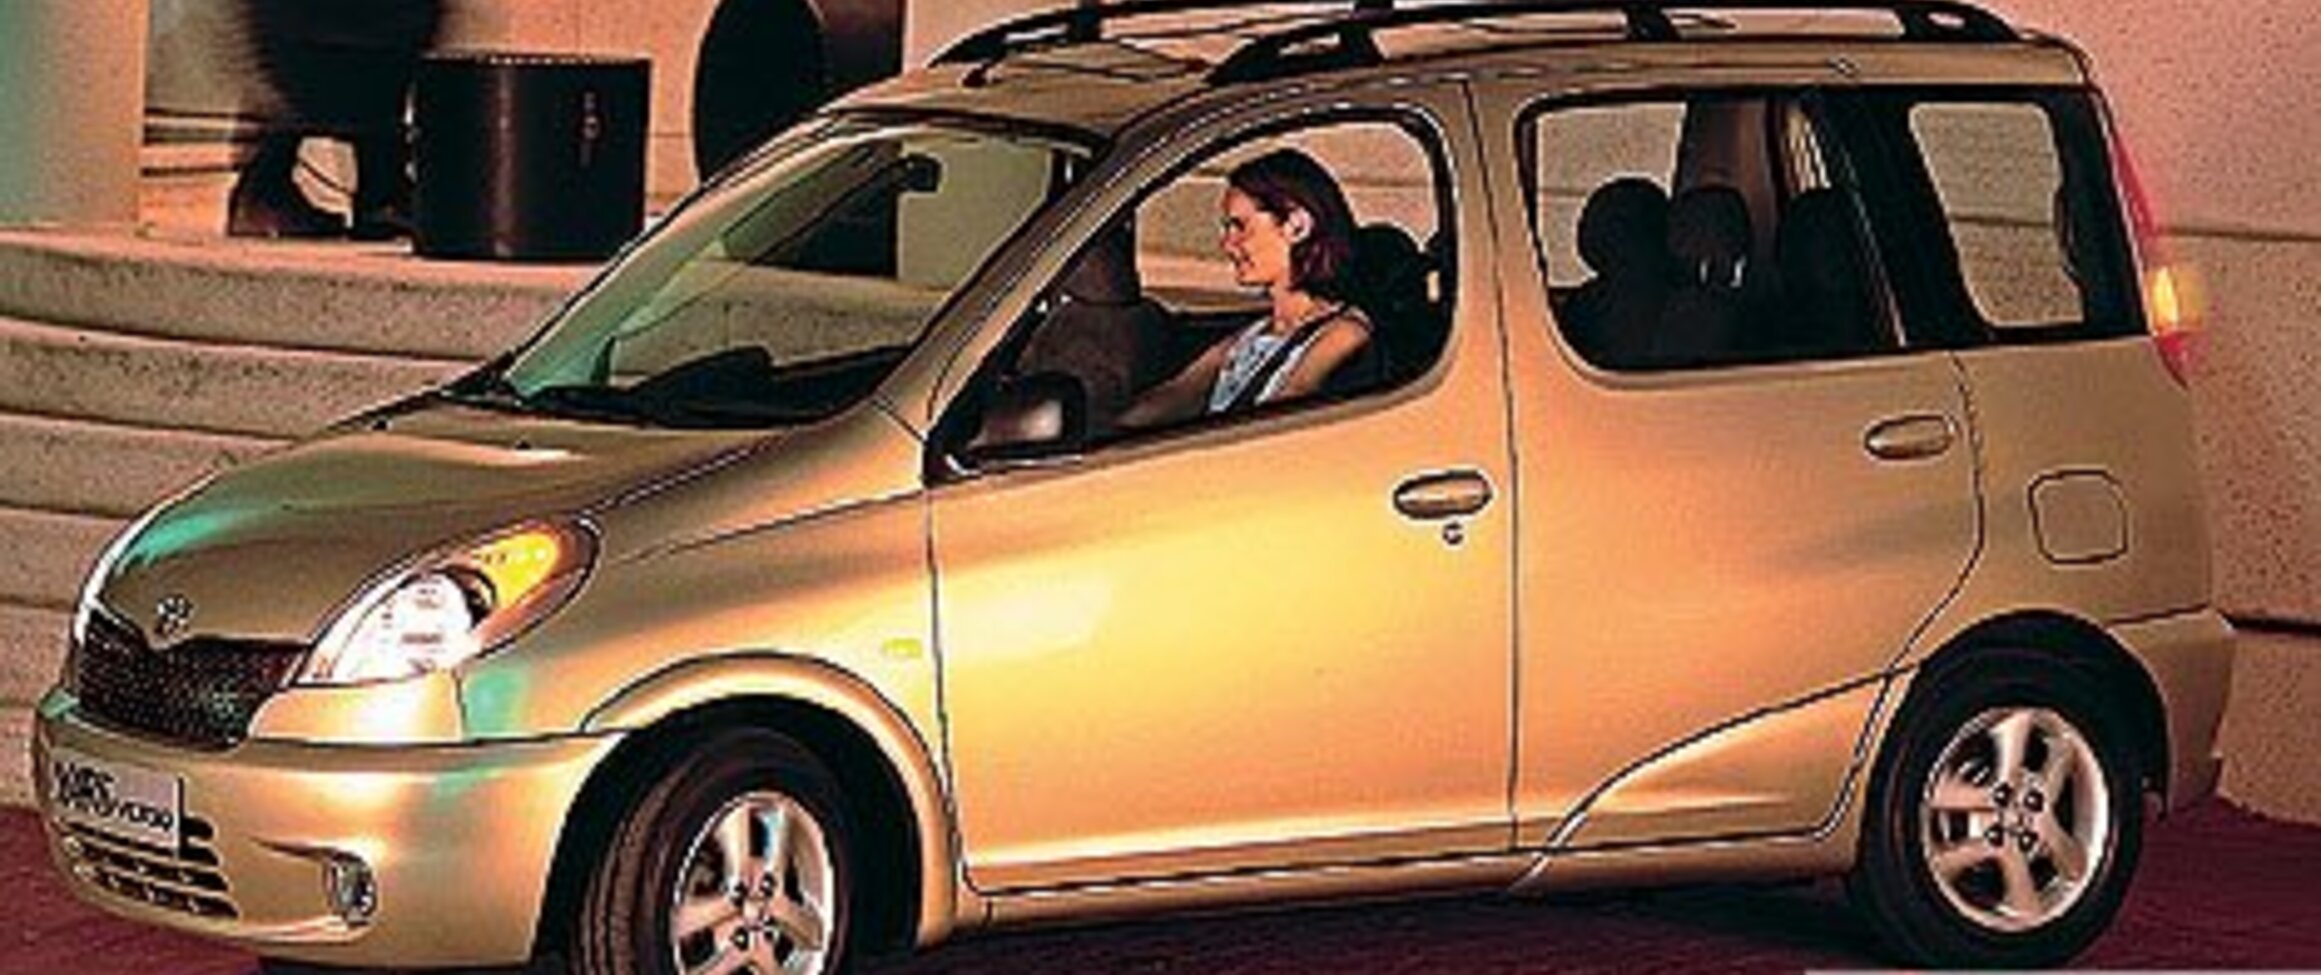 Toyota Yaris II Verso 1.4 DI (75 Hp) 2001, 2002, 2003, 2004, 2005, 2006 